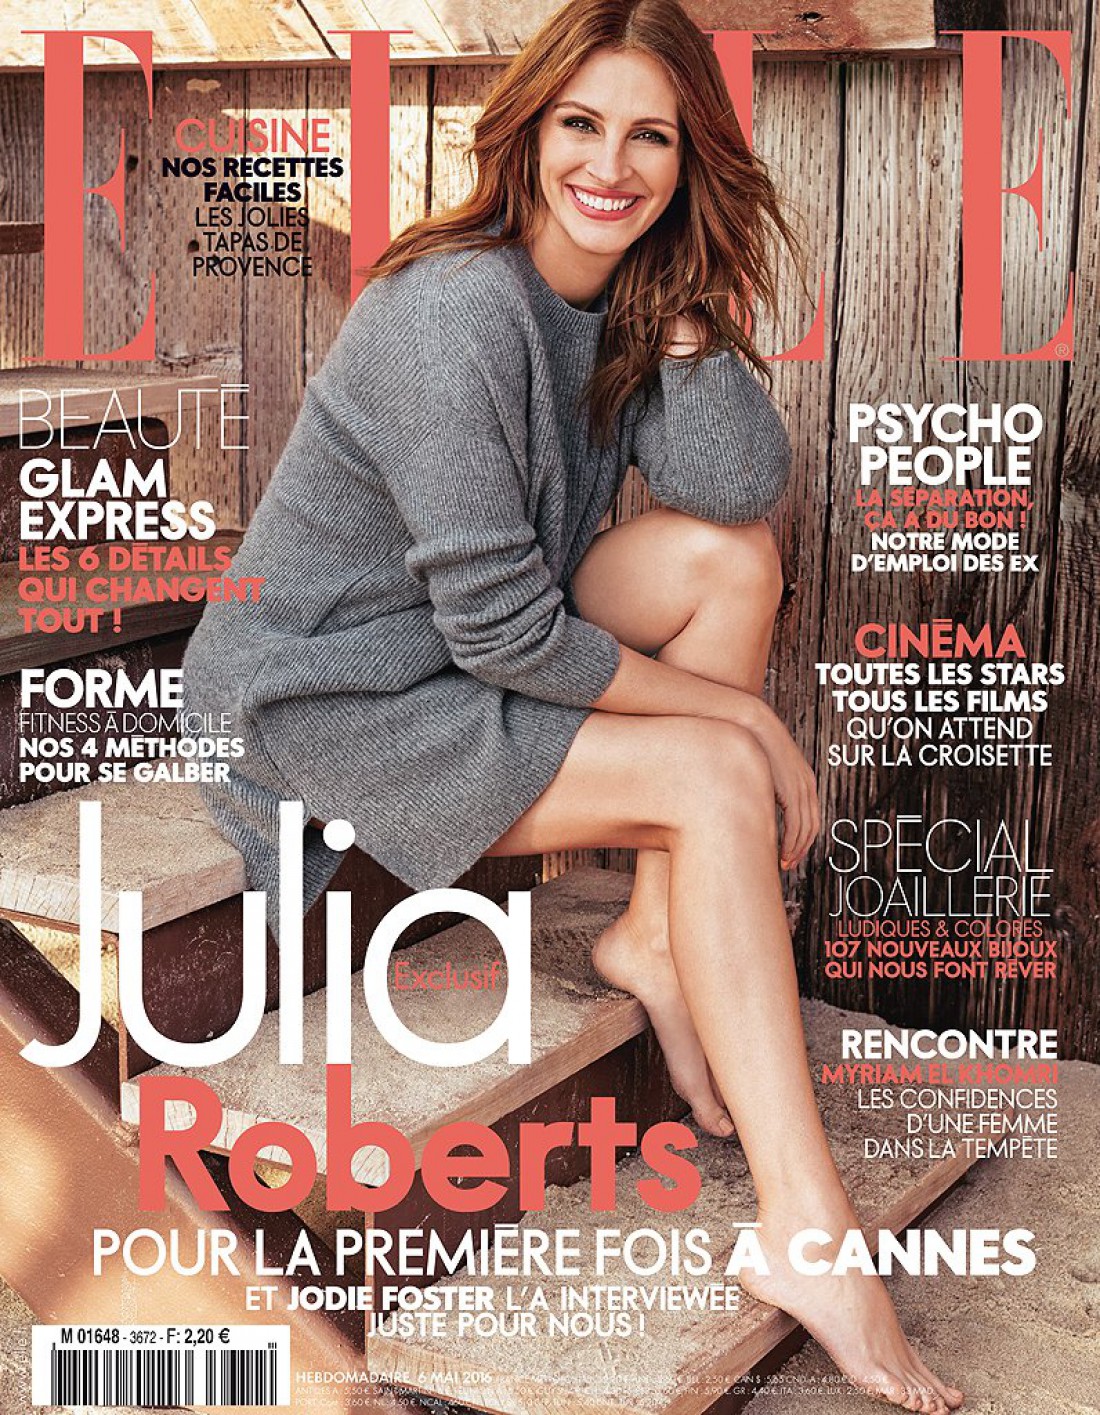 Джулия Робертс стала новой героиней свежего выпуска Elle France